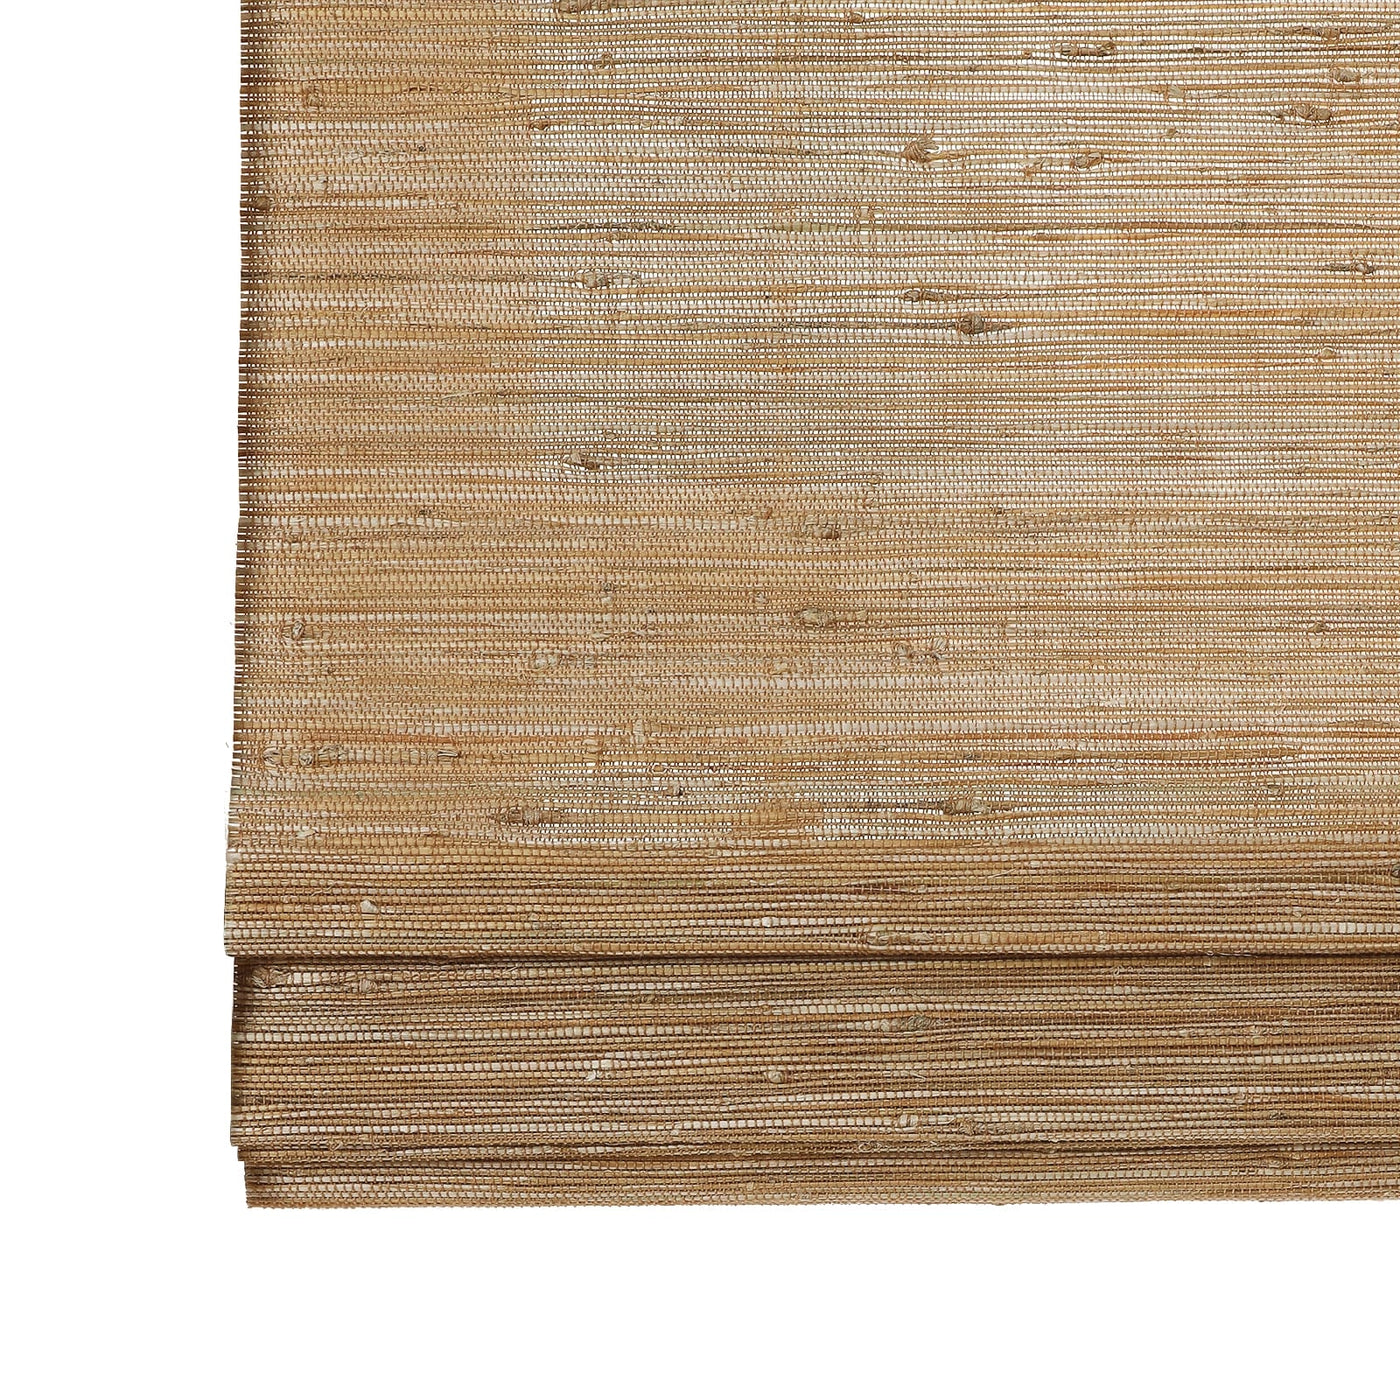 Natural Jute Bamboo Woven Shade - Bark